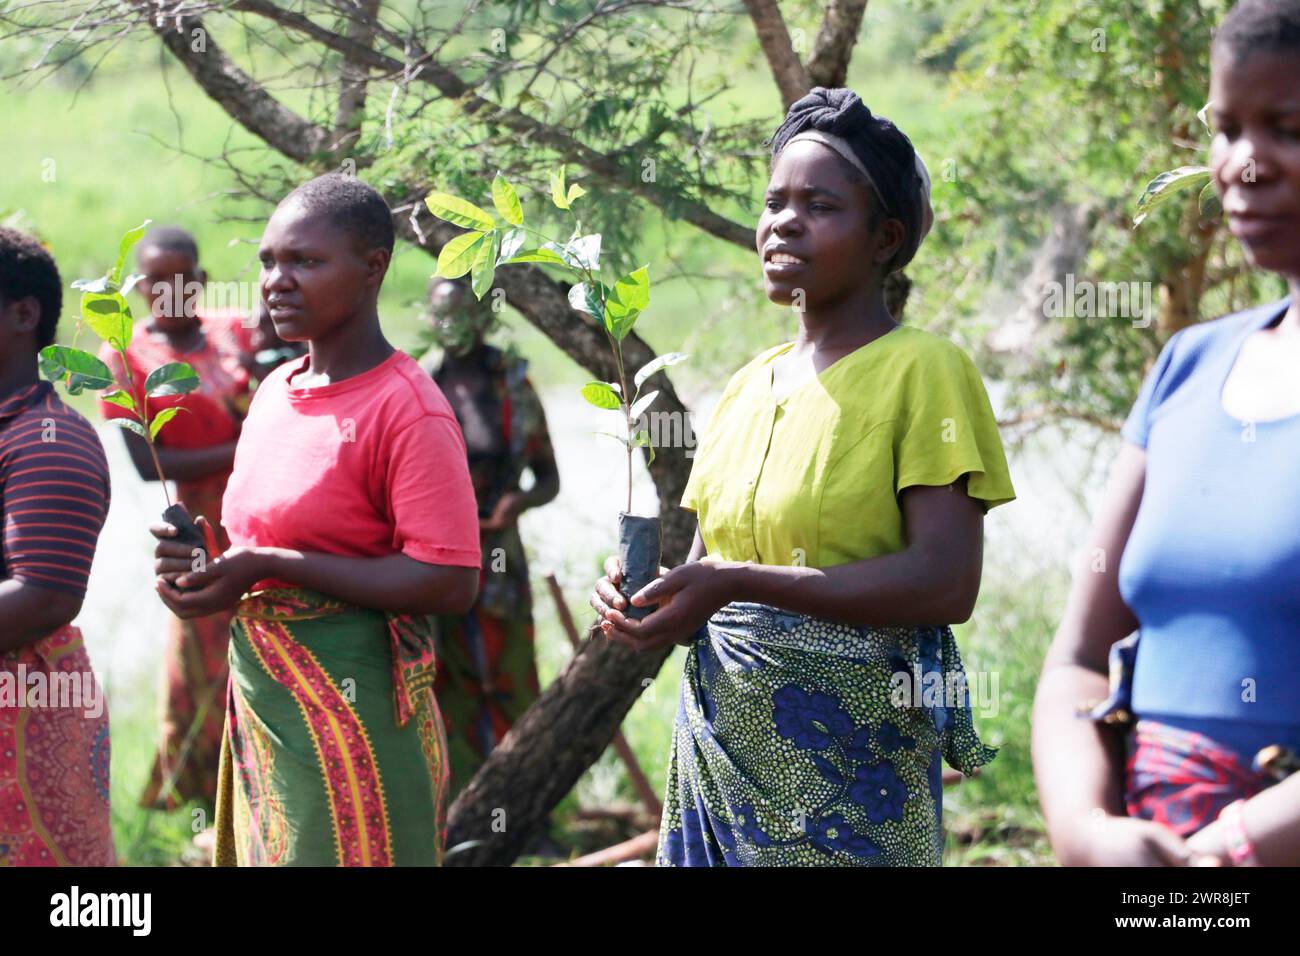 Le donne della zona che circonda il fiume Bua portano alberi 'Mibawa' da piantare sulle rive del fiume come parte del programma di rimboschimento nel distretto di Kasungu, Malawi. Foto Stock